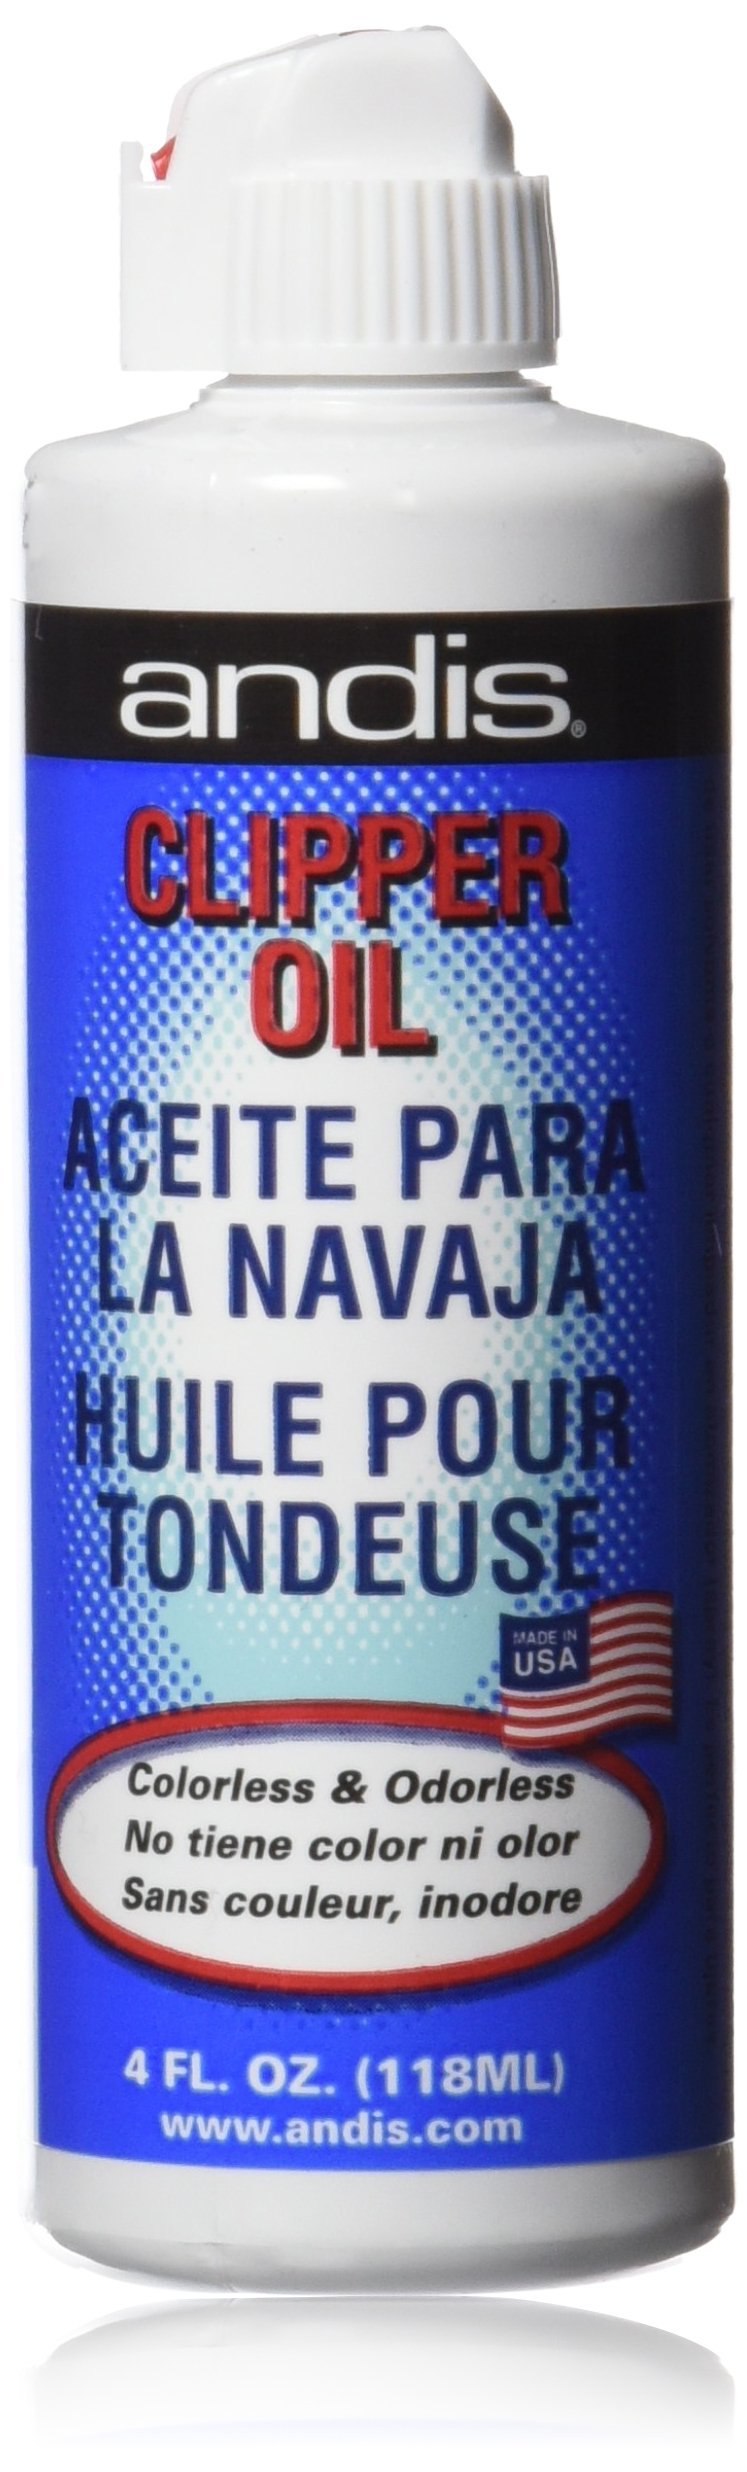 [Australia] - Andis Clipper Oil 4 Ounce 